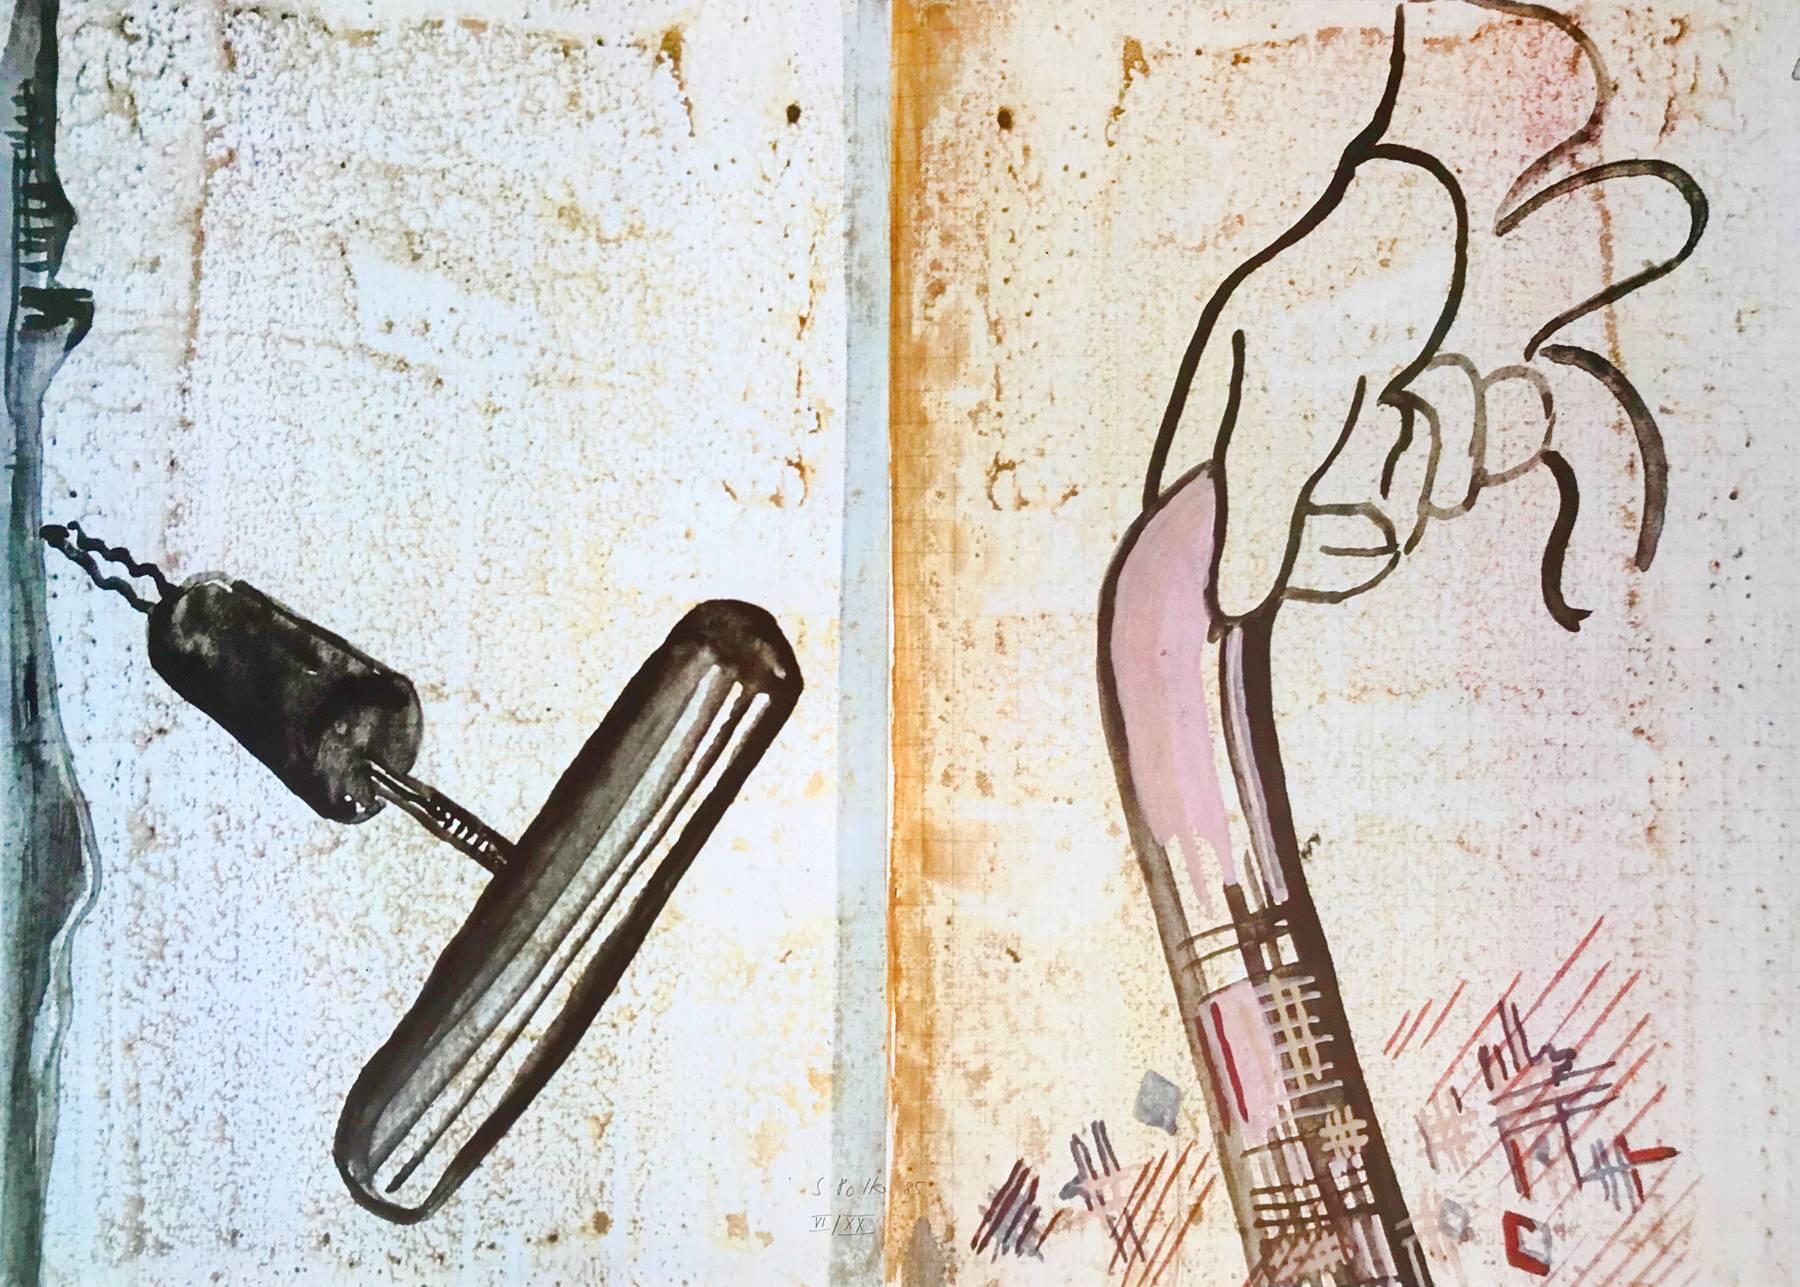 Sigmar Polke (allemand, 1941-2010)
Sans titre (Spazierstock), 1985
Support : Lithographie offset en couleurs, sur papier
Dimensions : 19 7/10 × 27 3/5 in (50 × 70 cm)
Edition de 120 exemplaires : signés et numérotés à la main.
Condit : Excellent
